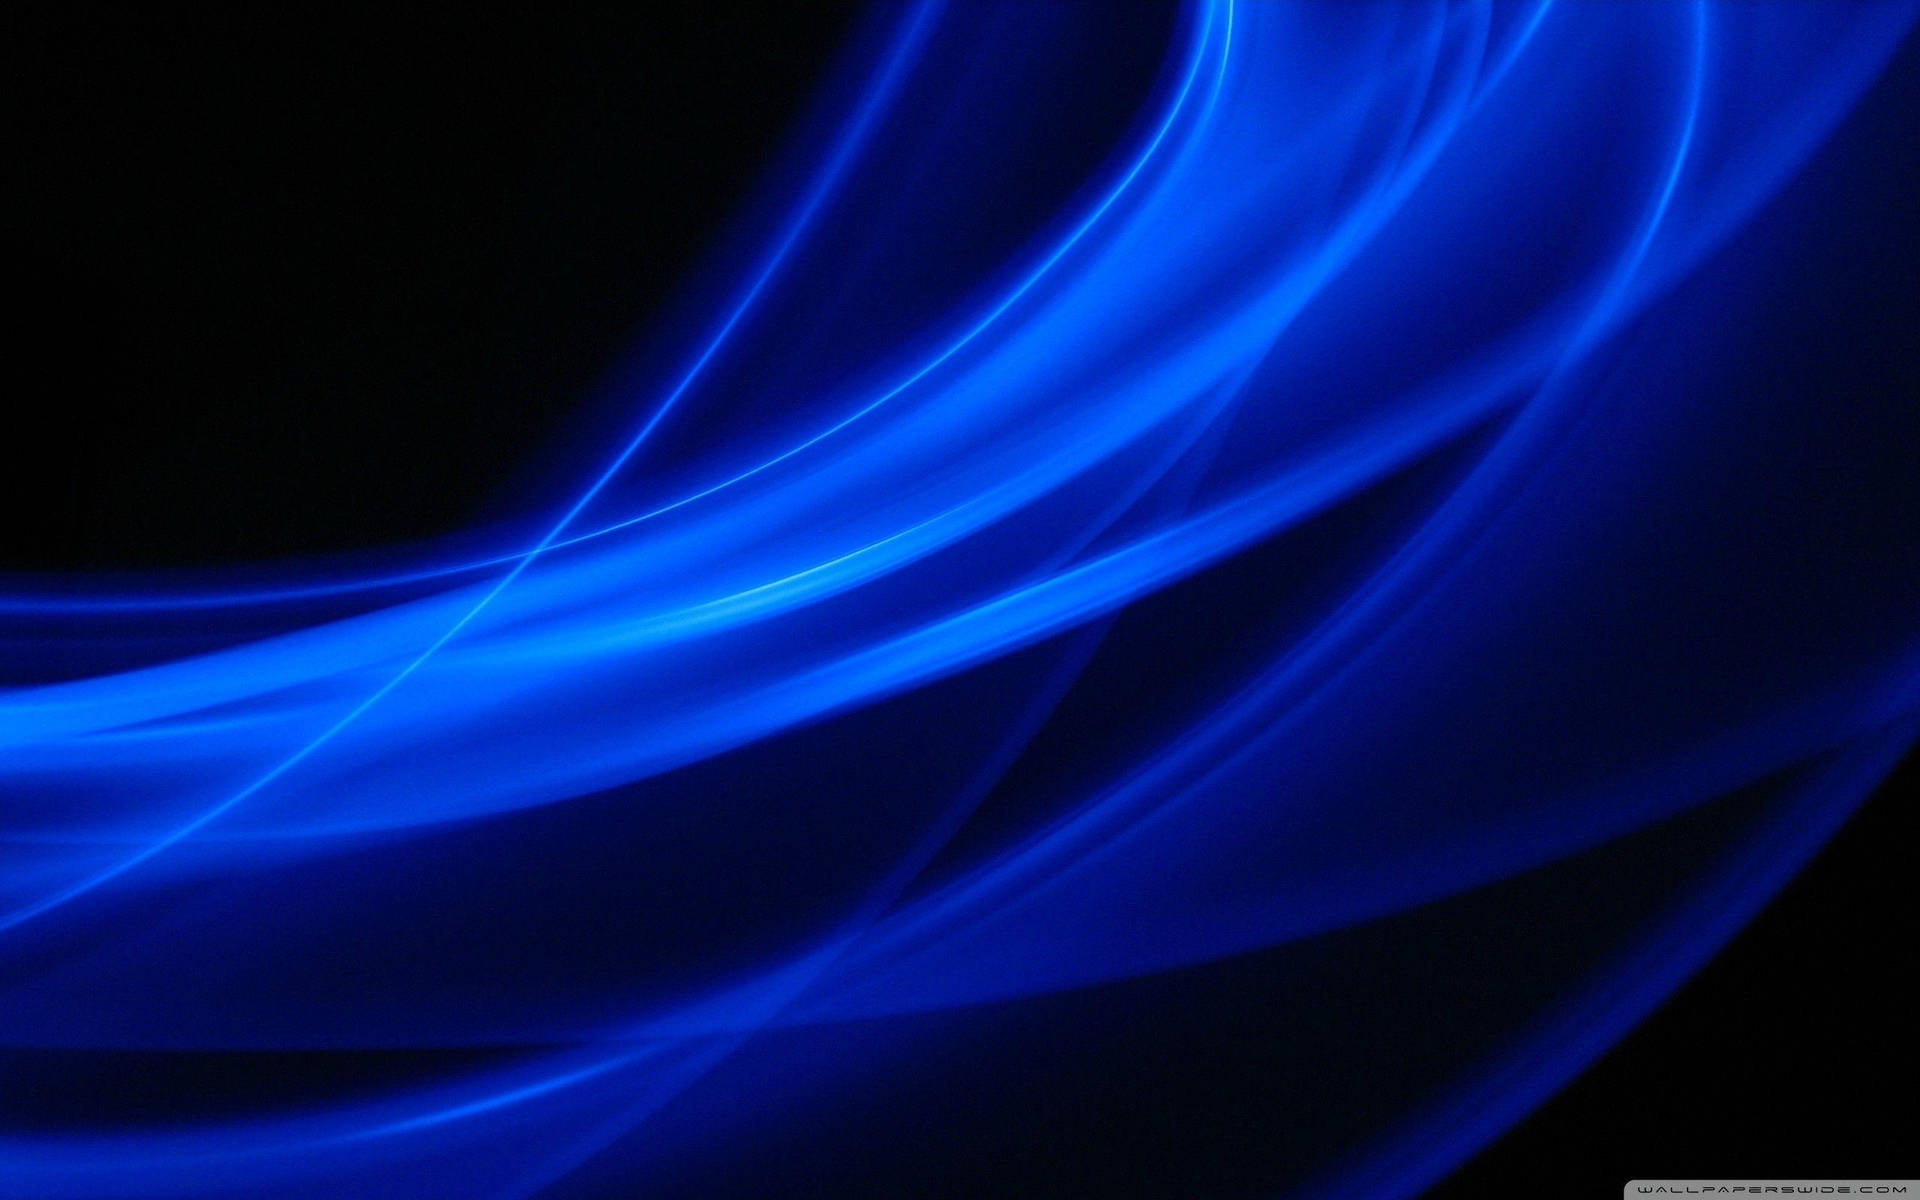 Dark Blue Light Waves Background